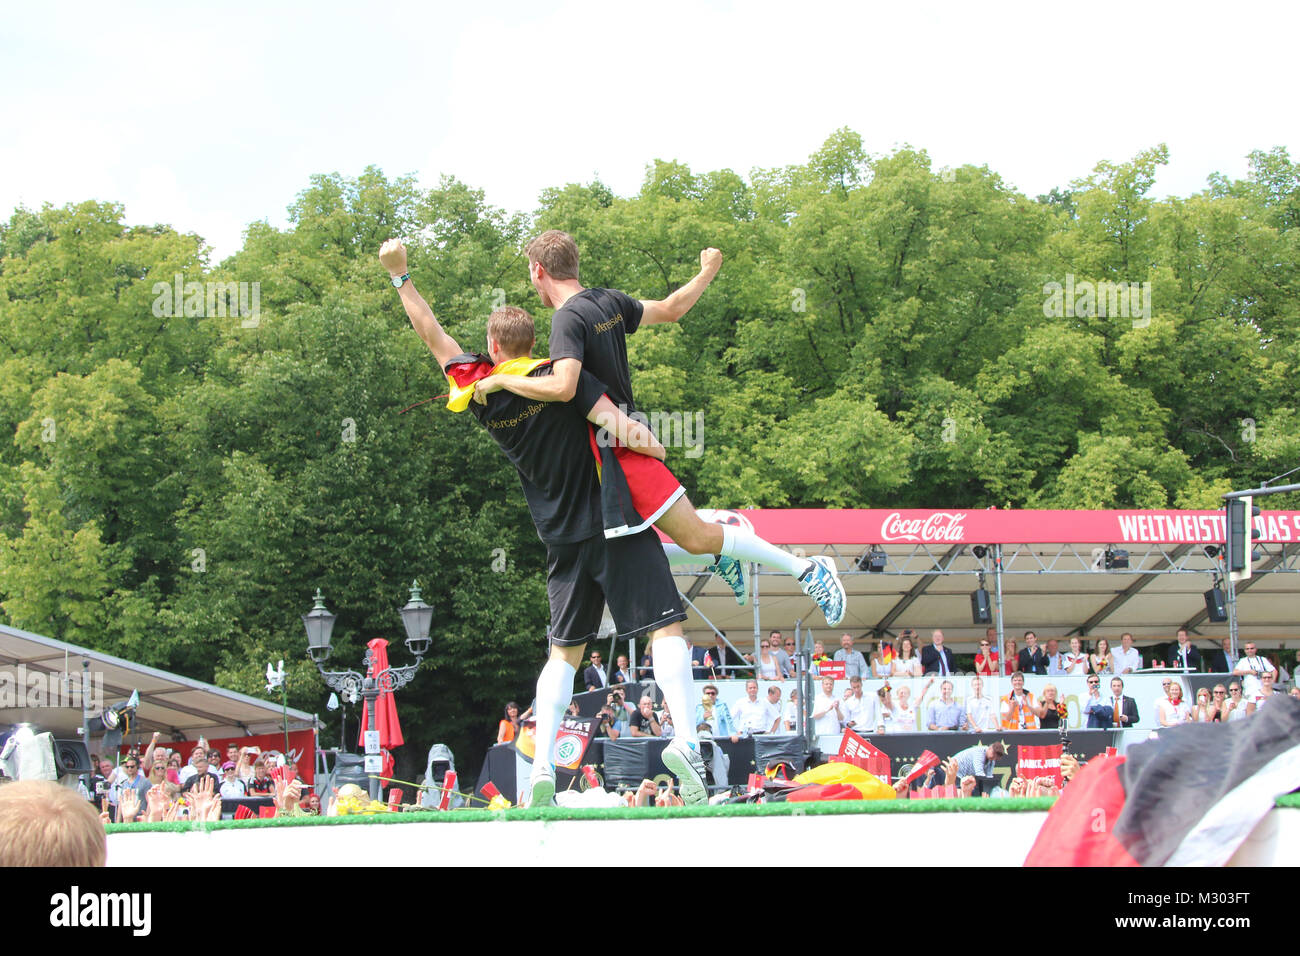 Manuel Neuer und Thomas Mueller, Empfang der deutschen Fussballmannschaft nach dem Gewinn des Weltmeistertitels auf der Fanmeile in Berlin, Berlin, 15.07.2014 Stock Photo